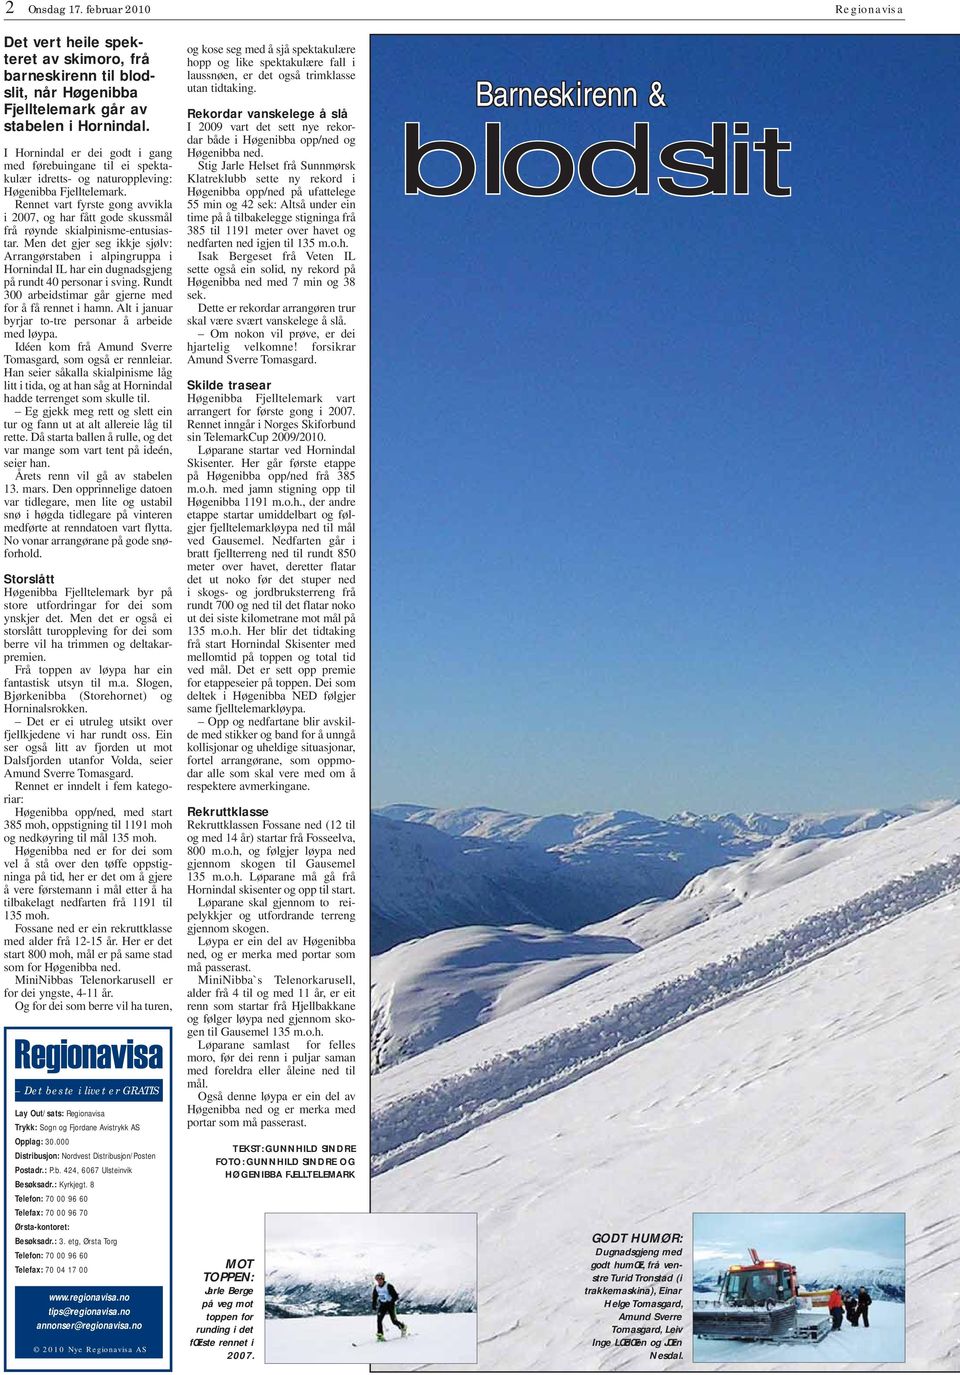 ennet vart fyrste gong avvikla i 2007, og har fått gode skussmål frå røynde skialpinisme-entusiastar.